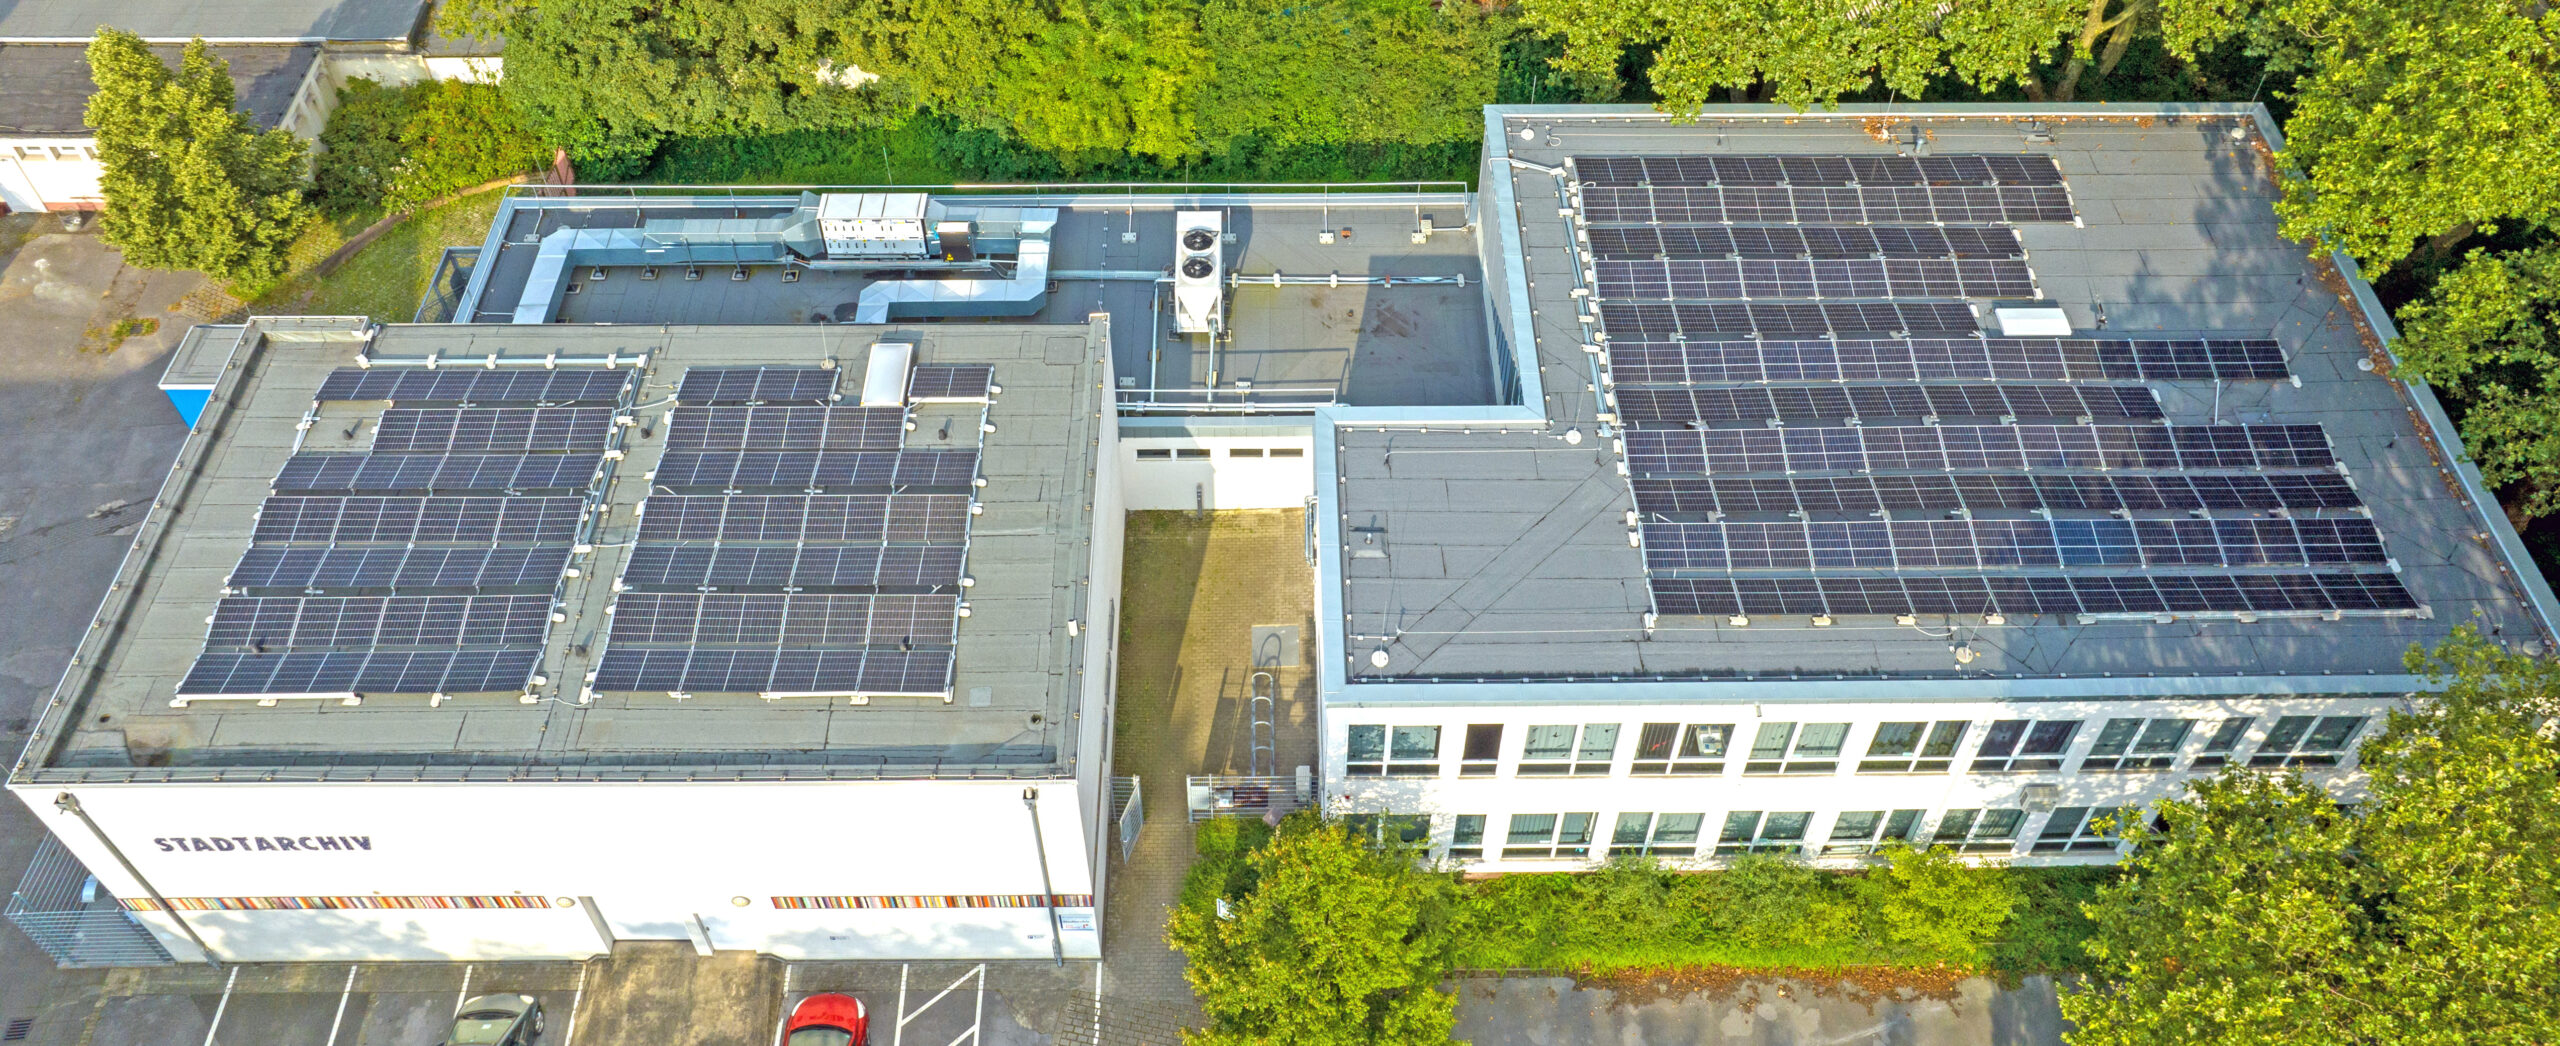 Photovoltaik liefert Strom für Stadtarchiv-Klimaanlage: Energetische Sanierung abgeschlossen